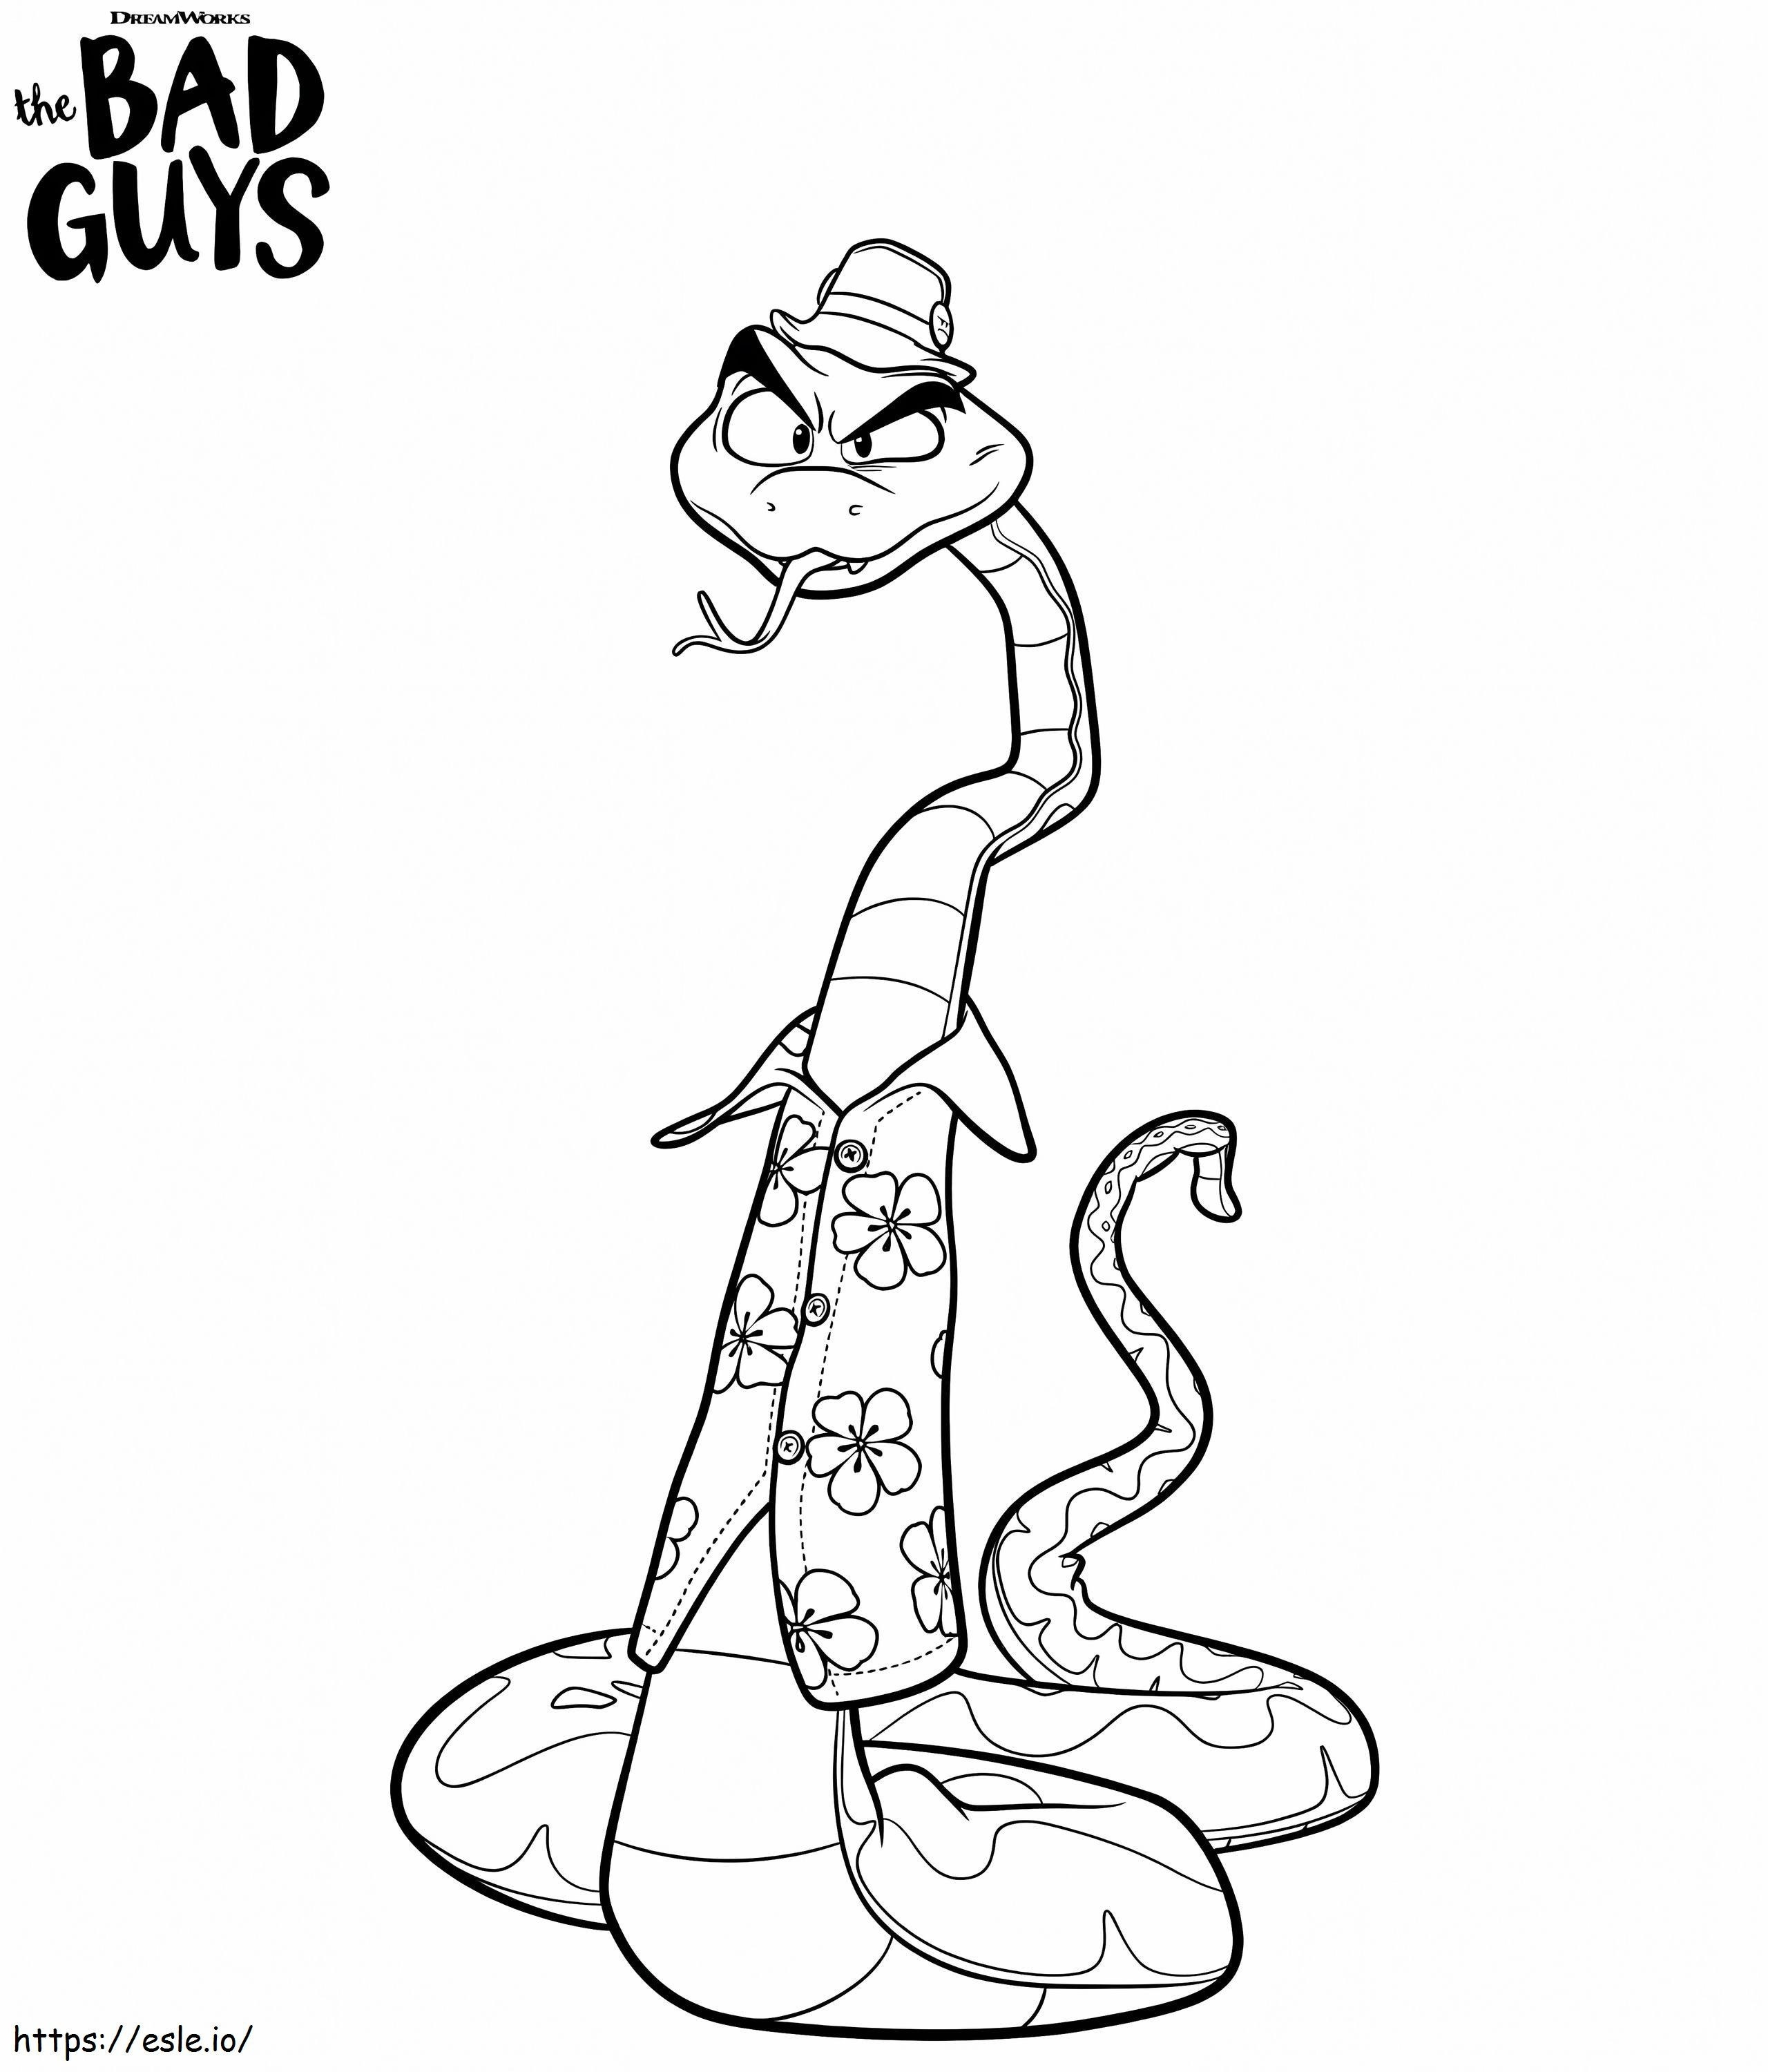 Il signor Snake di The Bad Guys da colorare